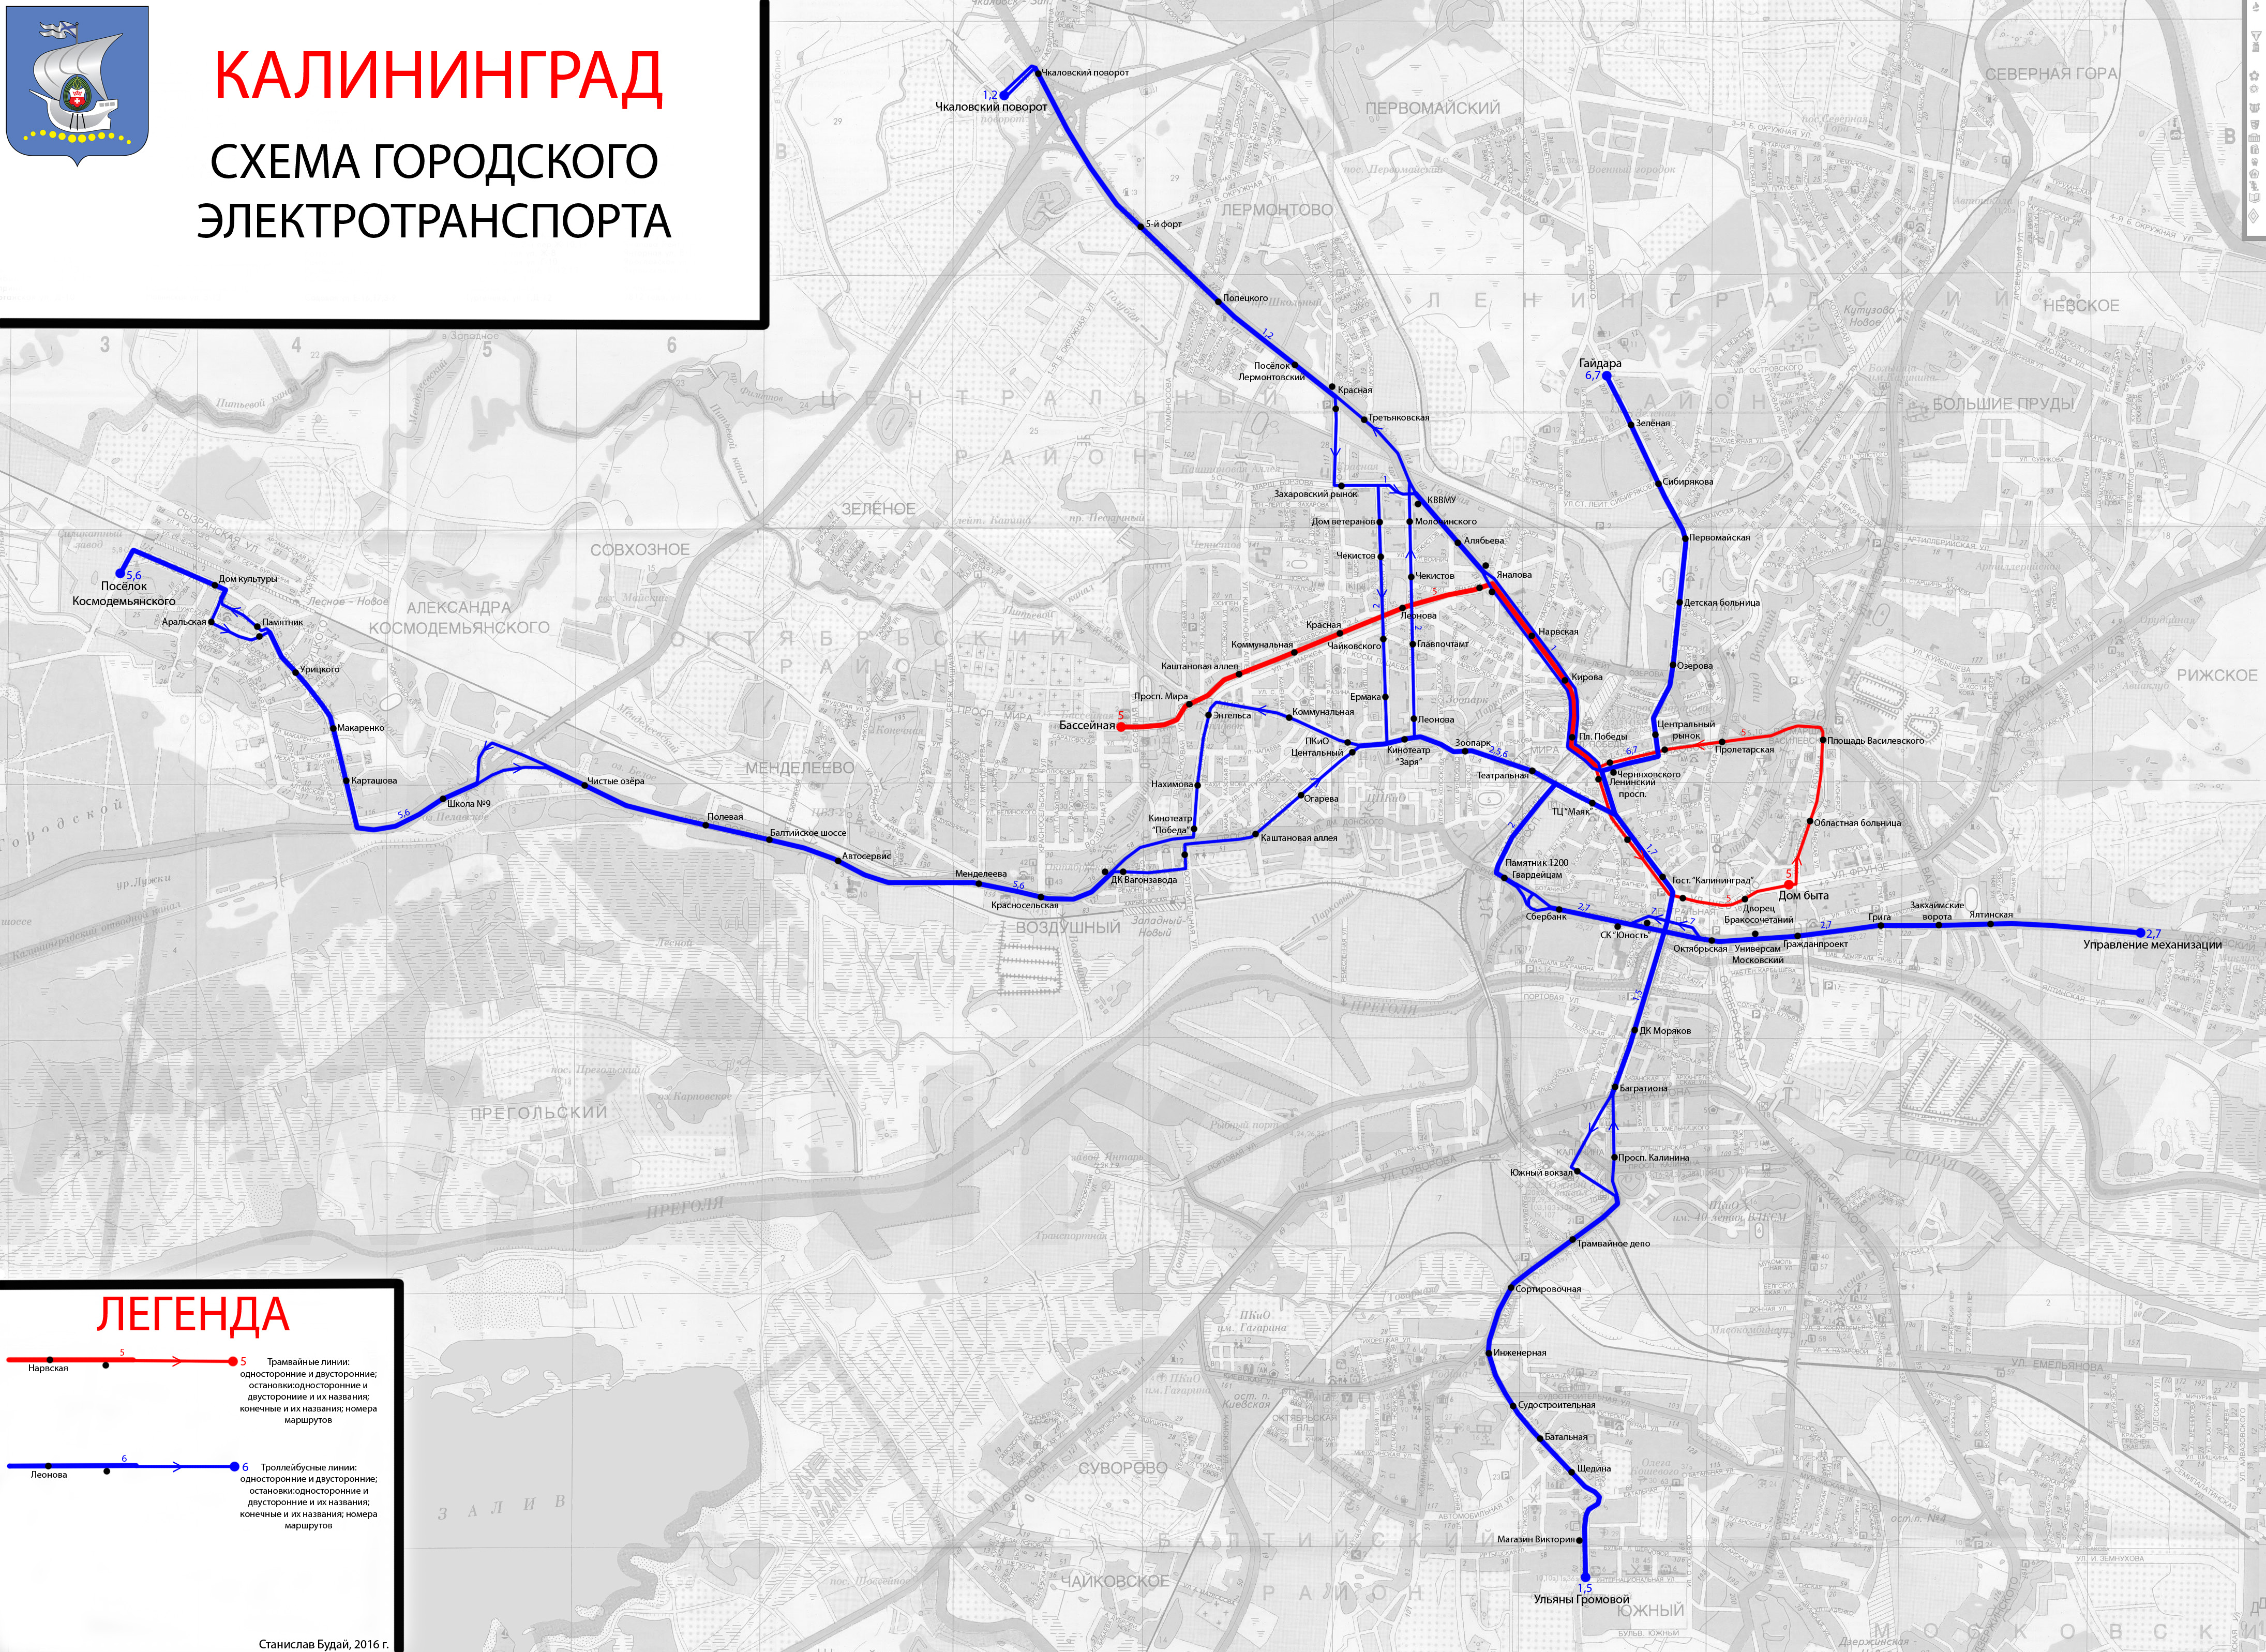 Kaliningrad — Maps